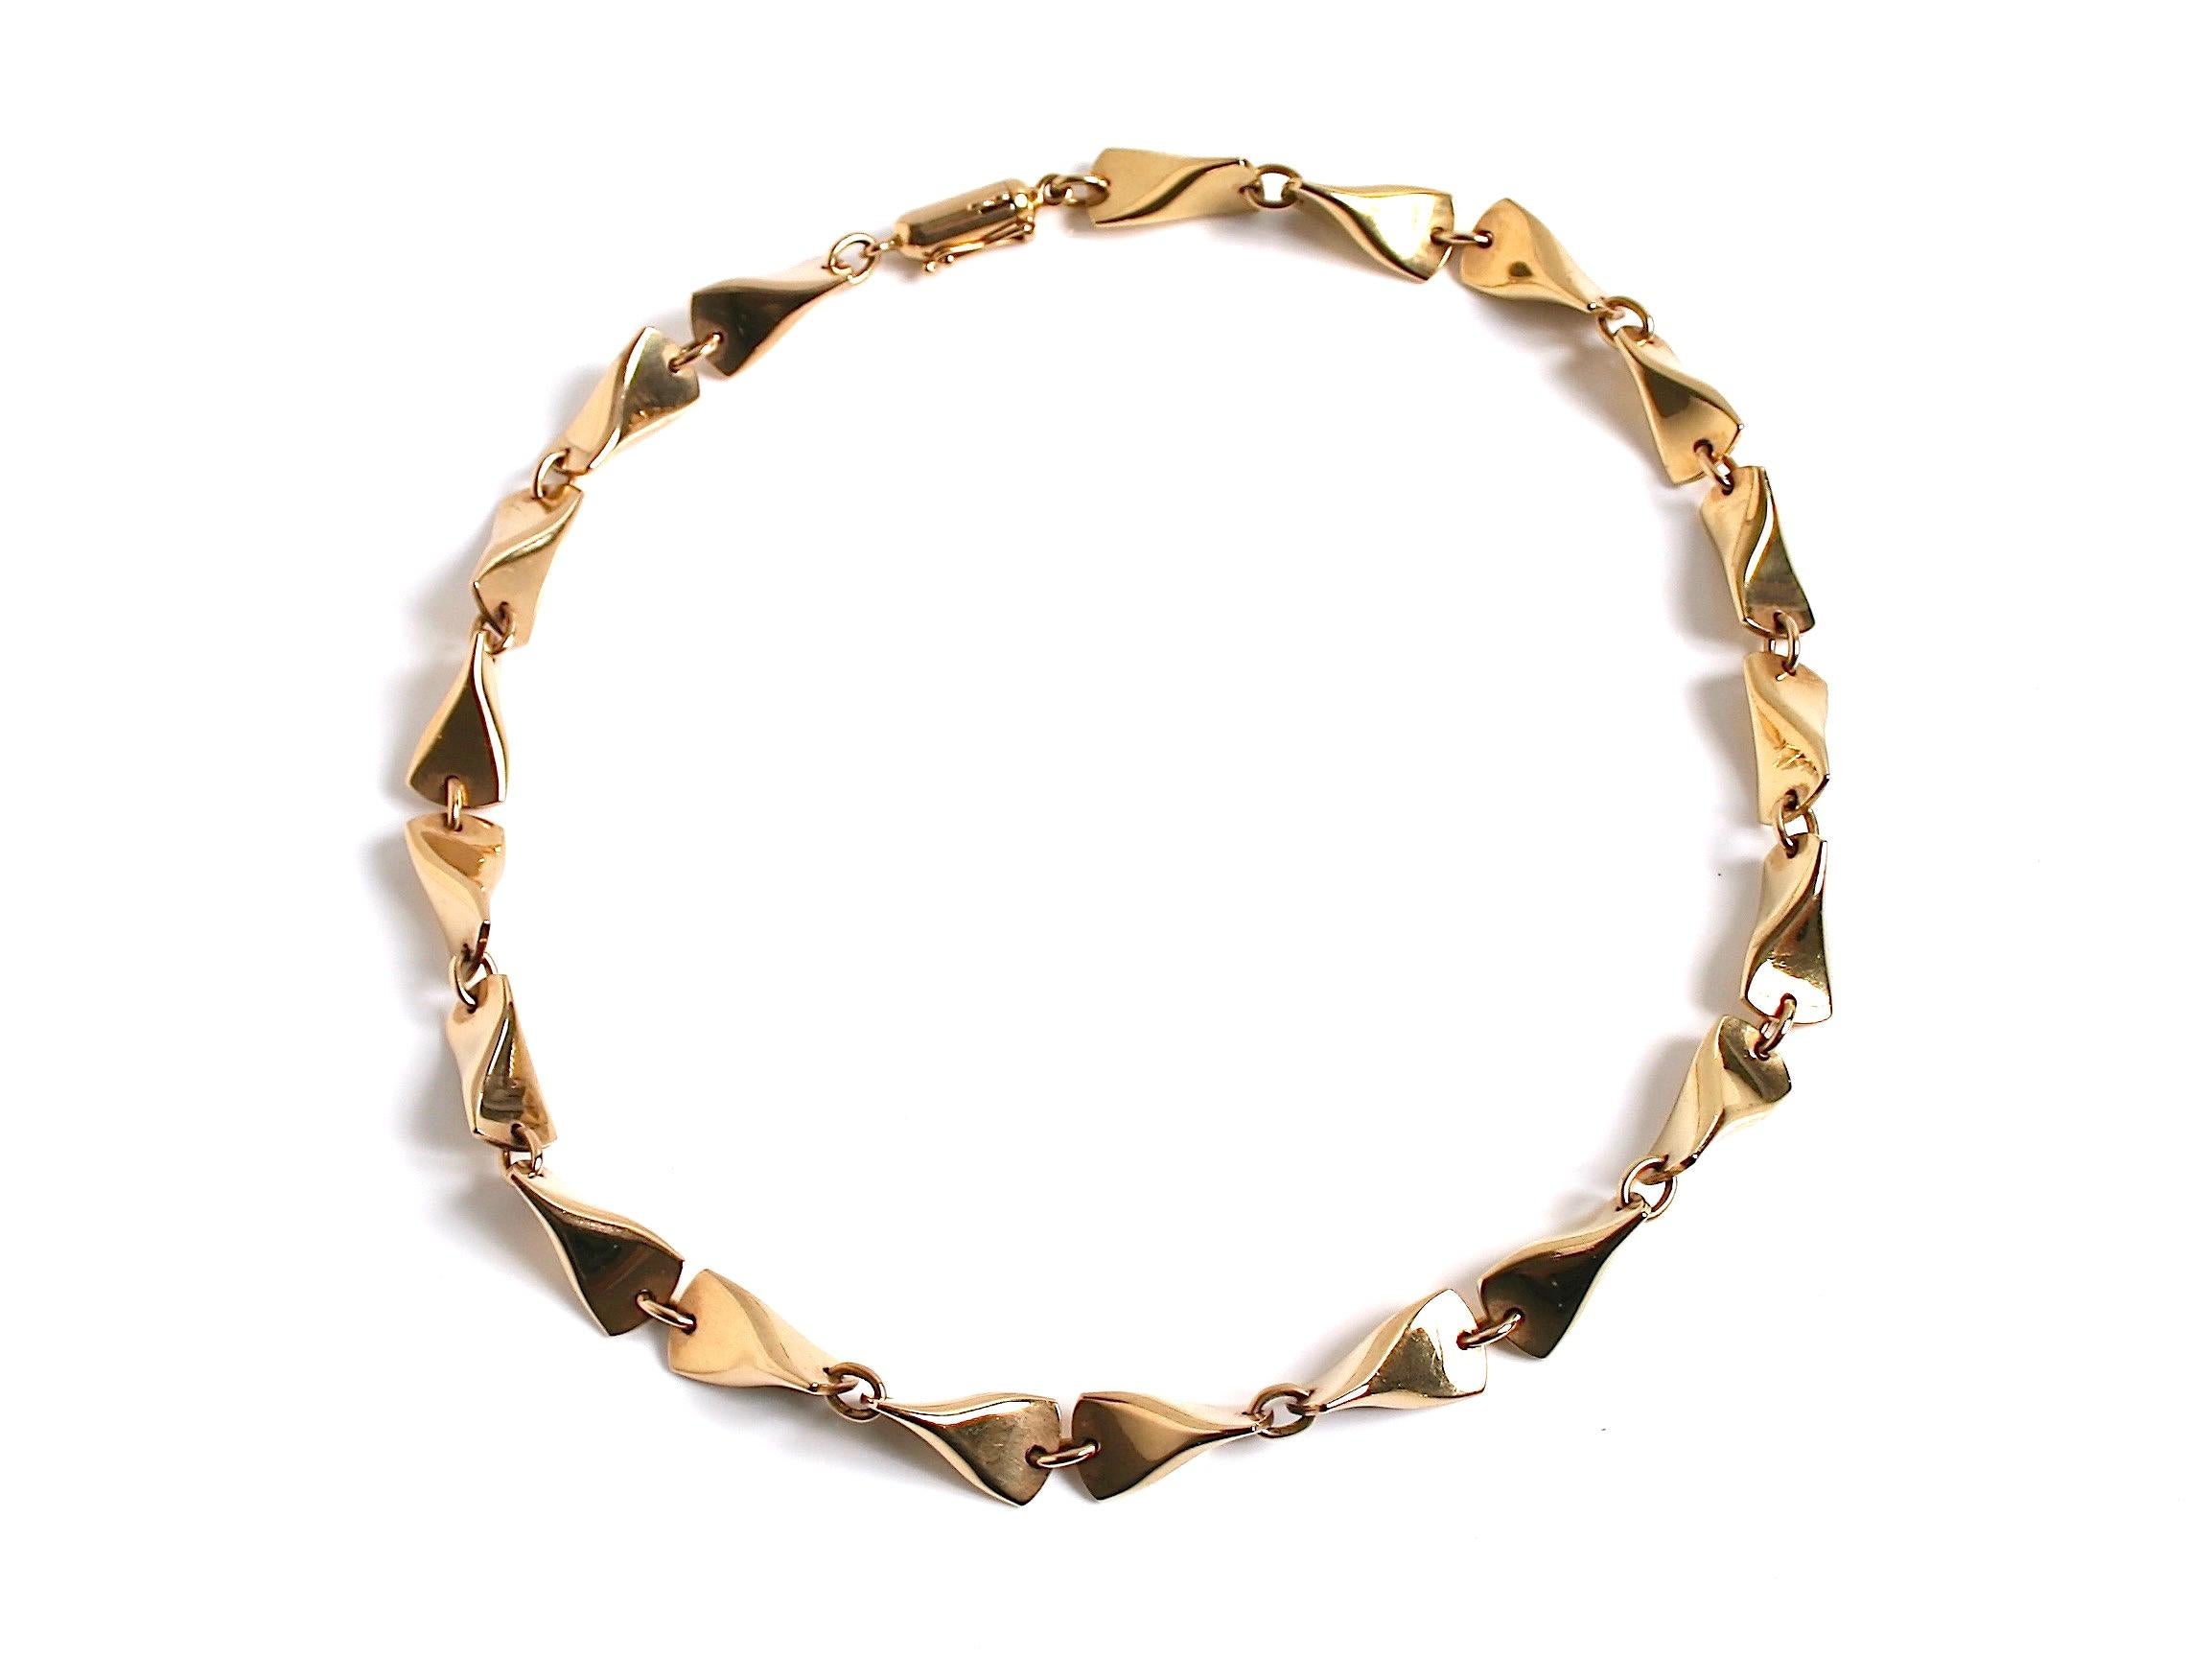 Modernist Georg Jensen 18 Karat Gold Butterfly Necklace Designed by Edvard Kindt Larsen